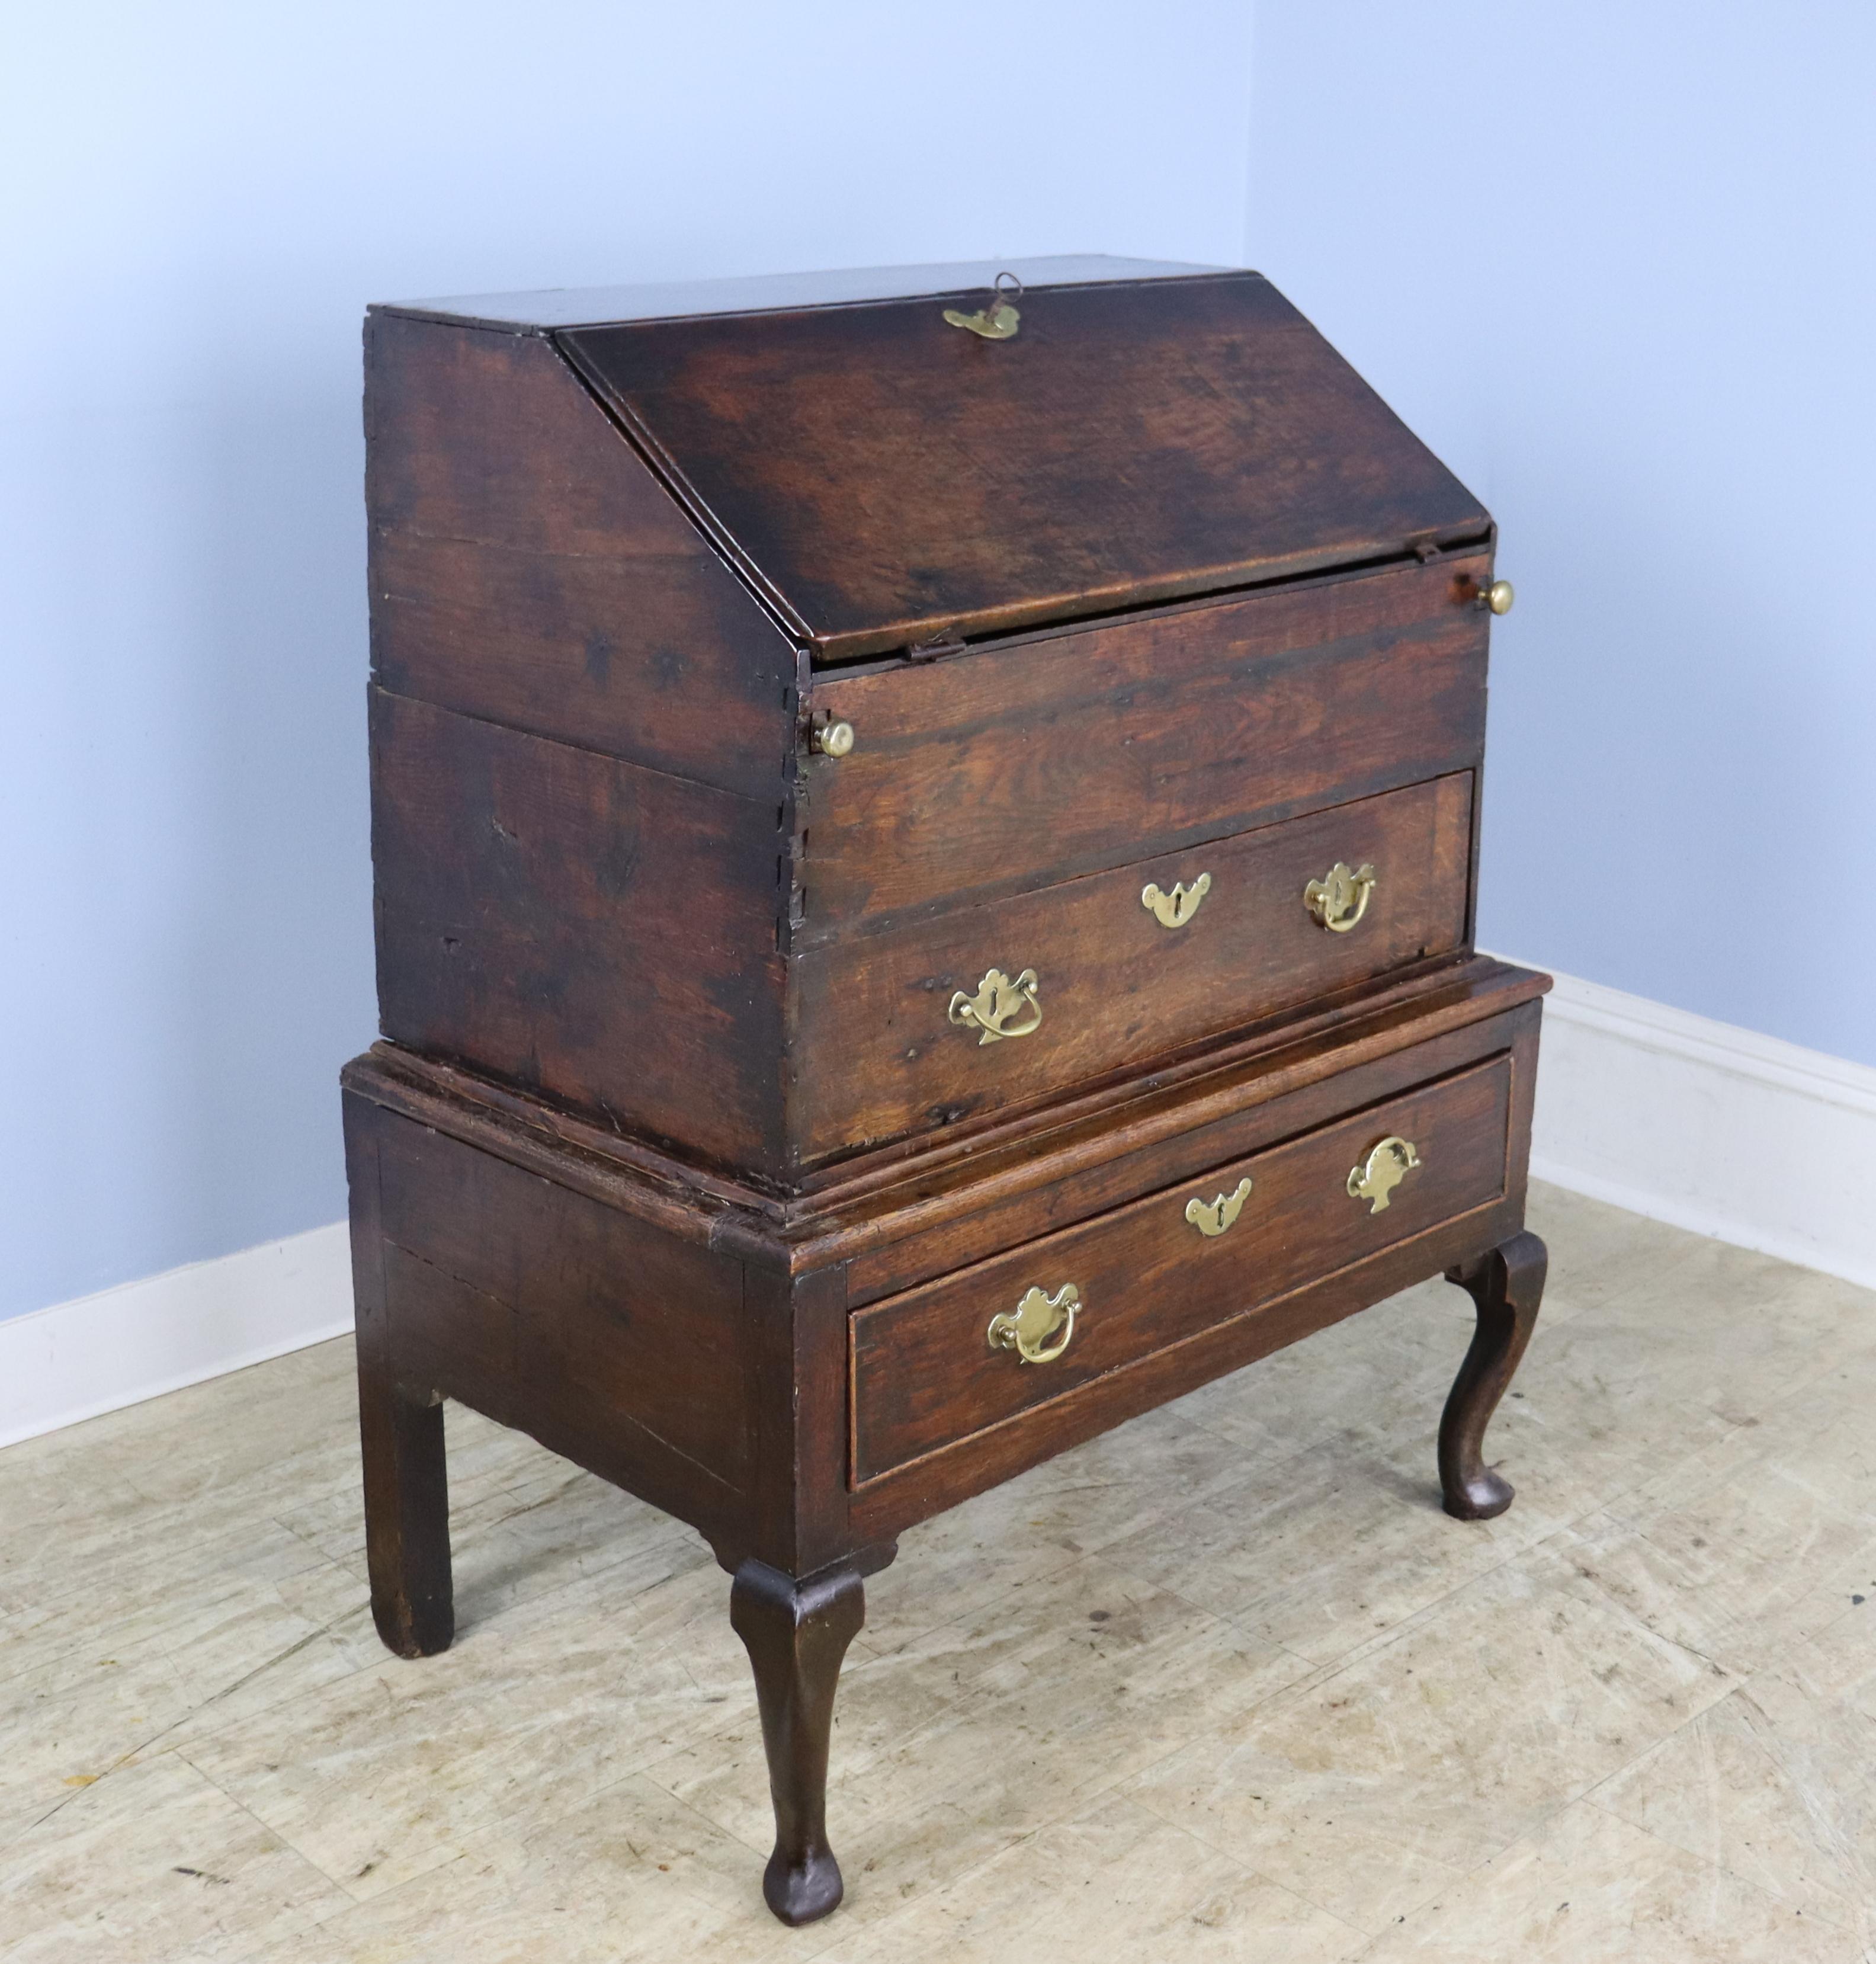 Dieser wunderbare Schreibtisch aus Eiche ist ein seltenes Beispiel für ein Möbelstück aus dem 17. Jahrhundert und befindet sich in einem sehr gut erhaltenen Zustand.  Der Originalschlüssel für die herunterklappbare Schreibfläche funktioniert gut,